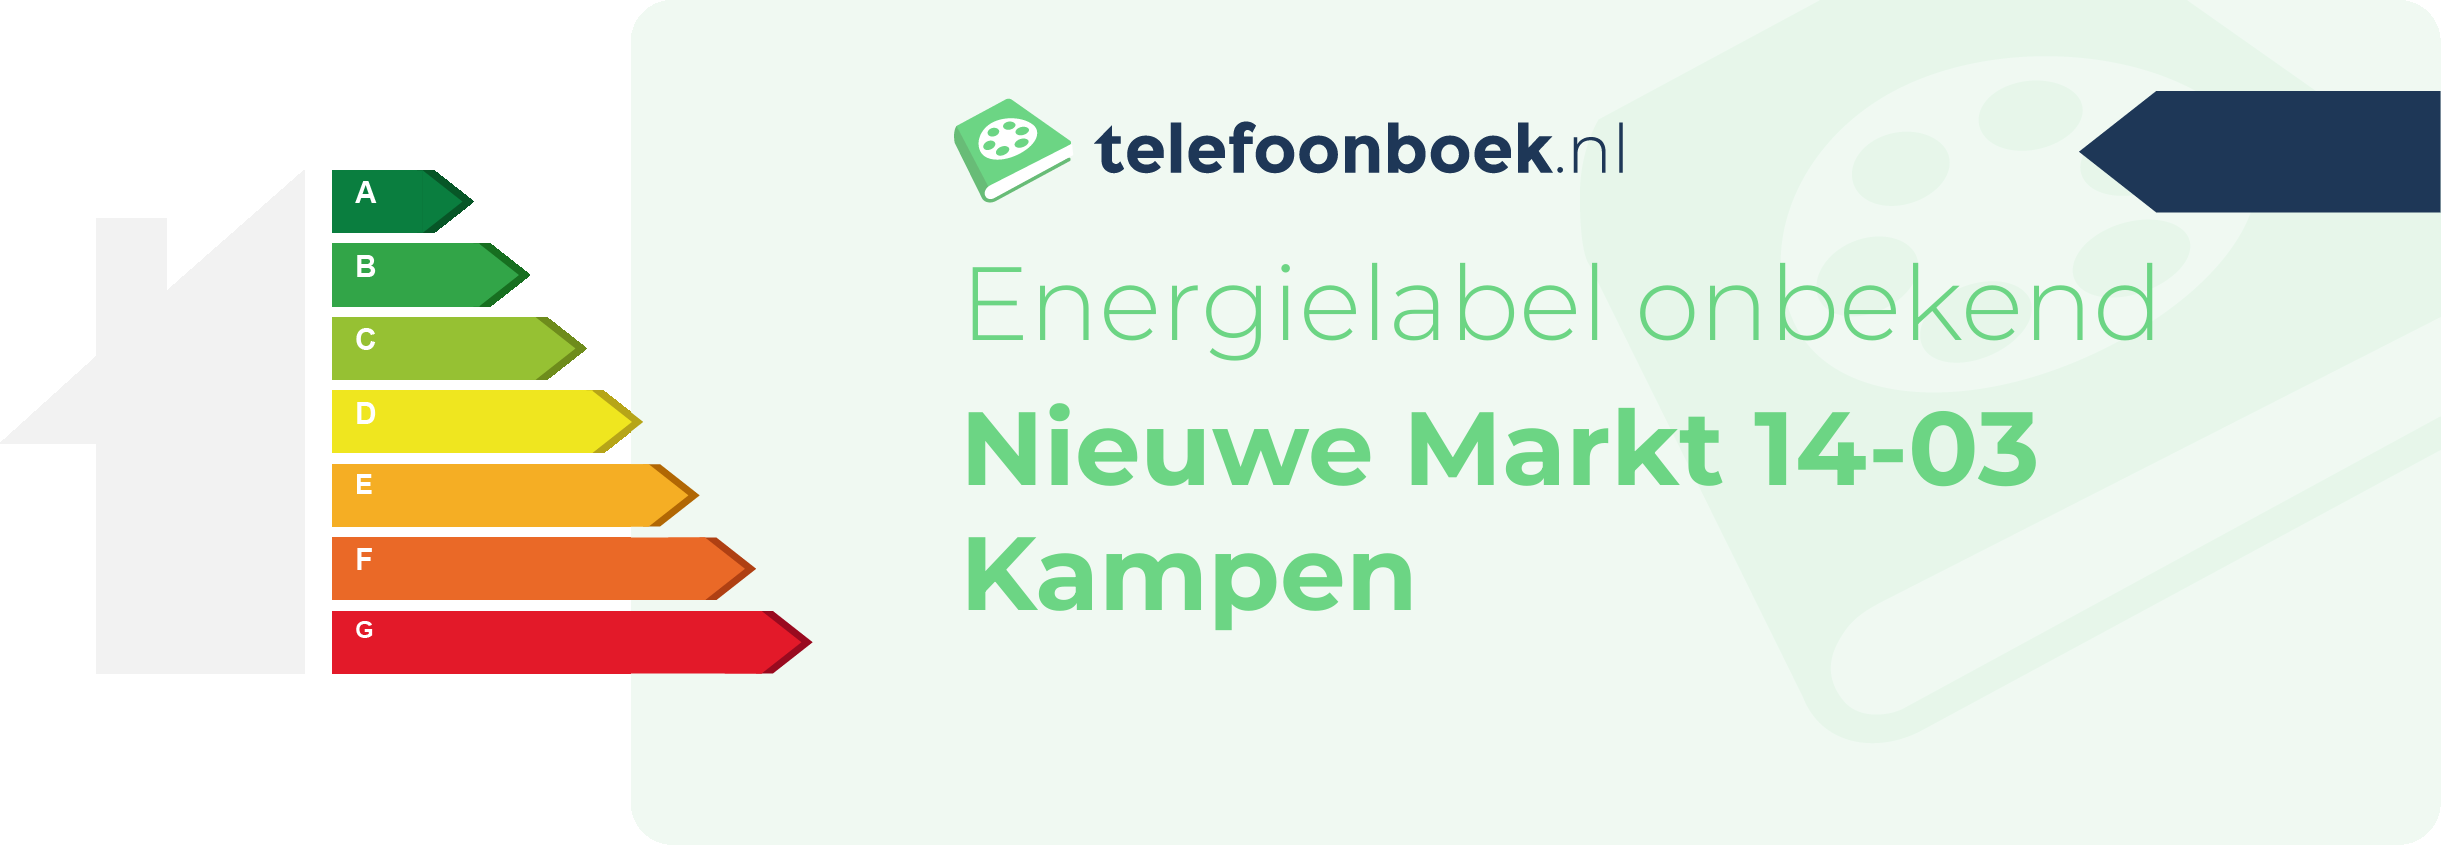 Energielabel Nieuwe Markt 14-03 Kampen